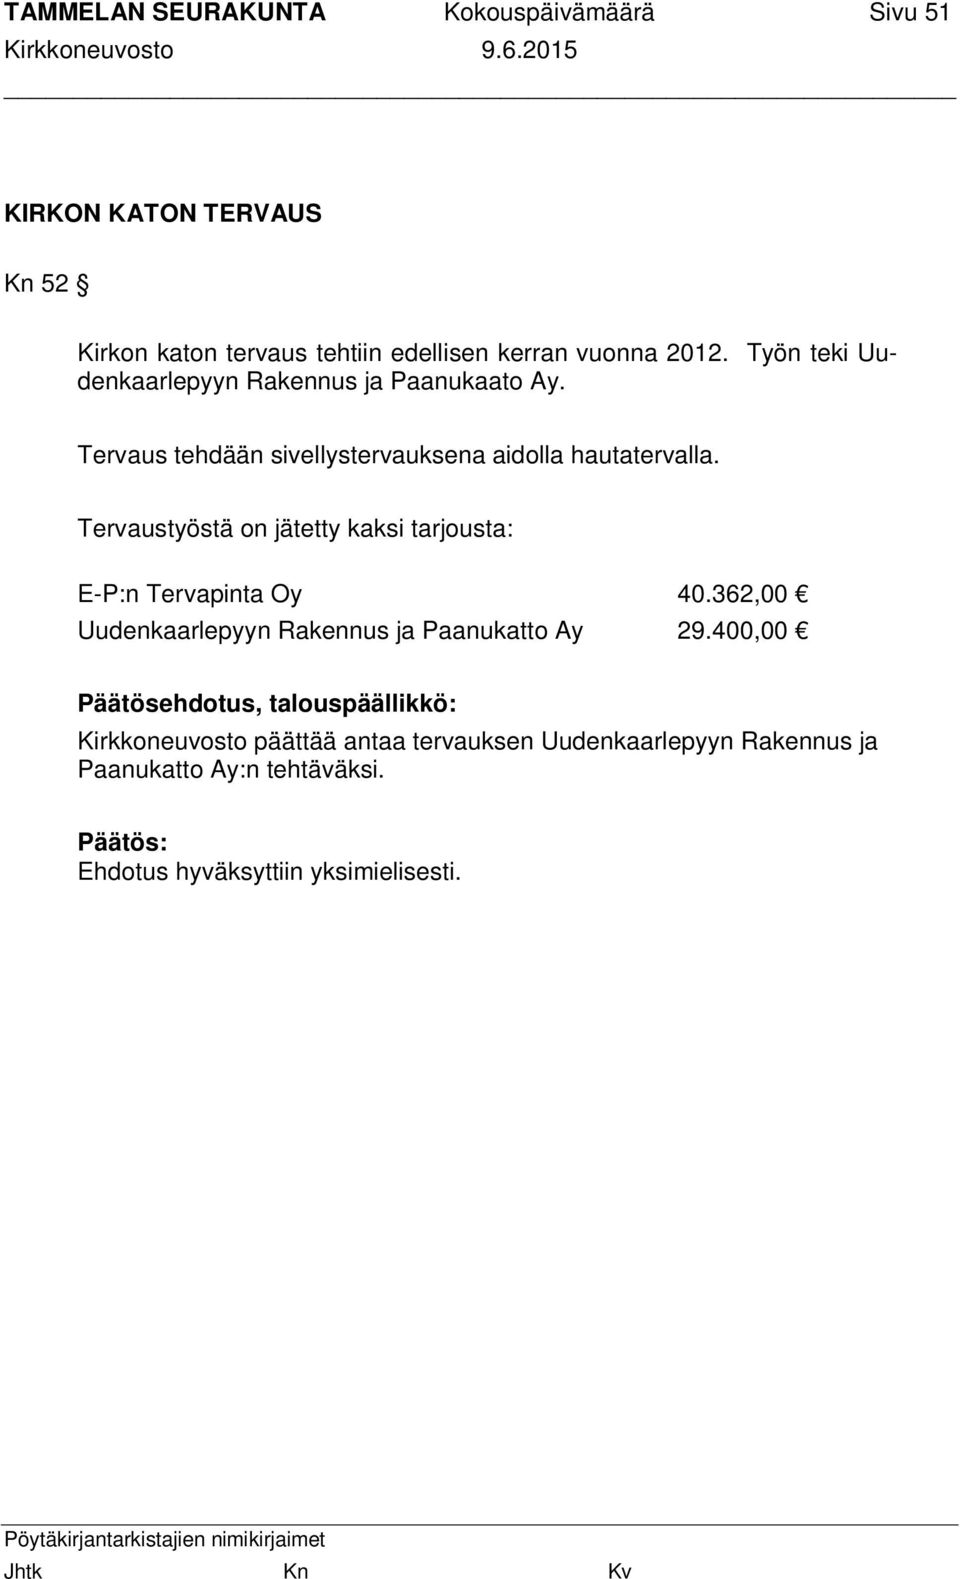 Tervaustyöstä on jätetty kaksi tarjousta: E-P:n Tervapinta Oy 40.362,00 Uudenkaarlepyyn Rakennus ja Paanukatto Ay 29.